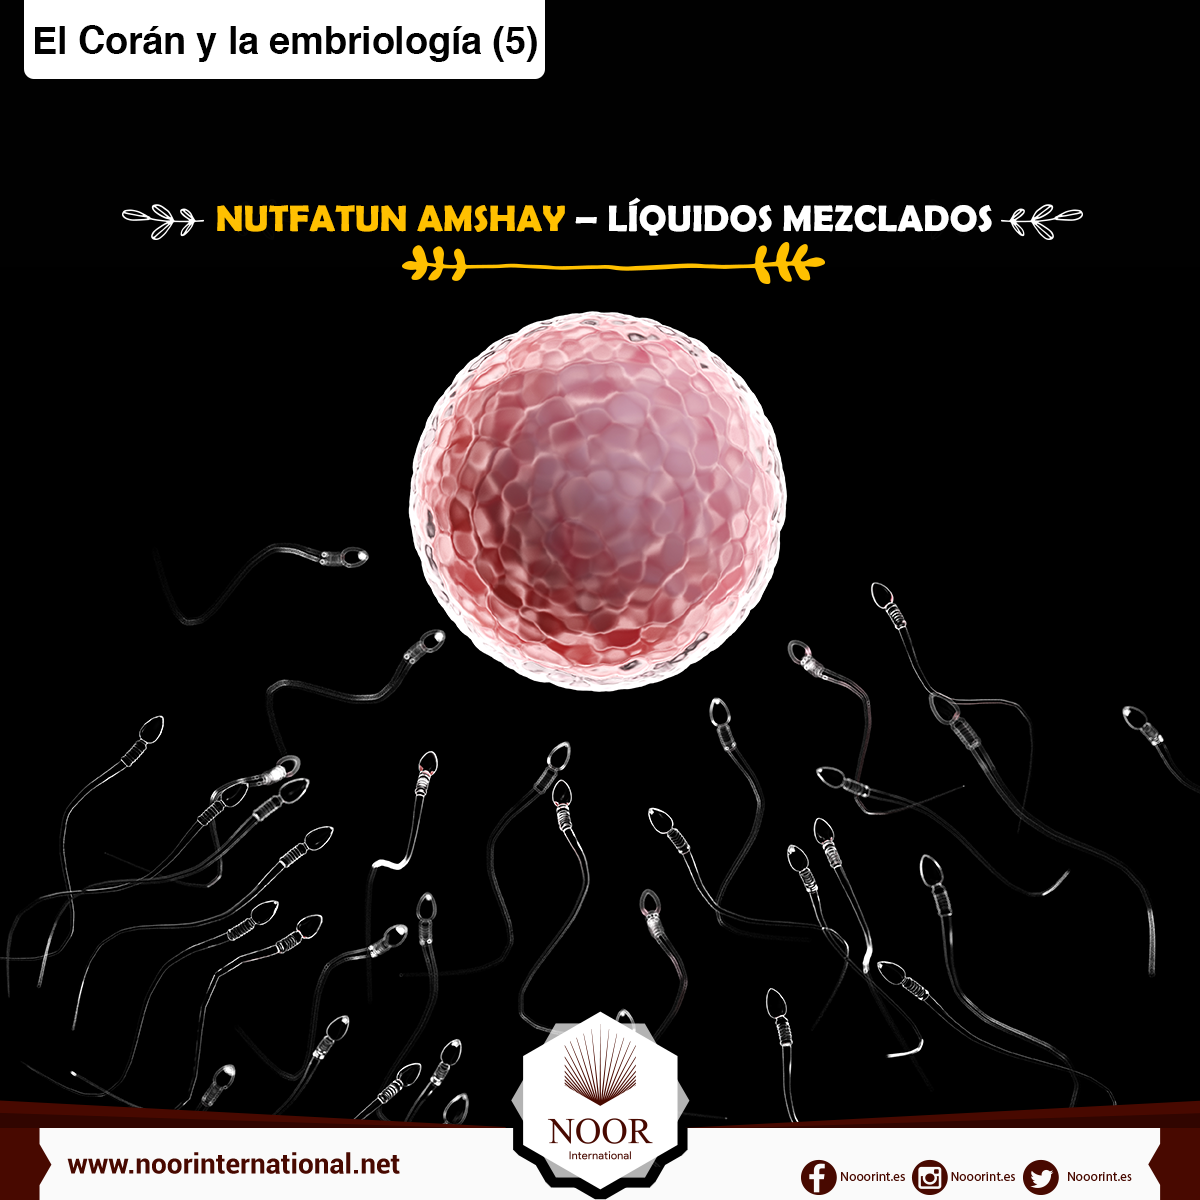 El Corán y la embriología: Nutfatun amshay, líquidos mezclados